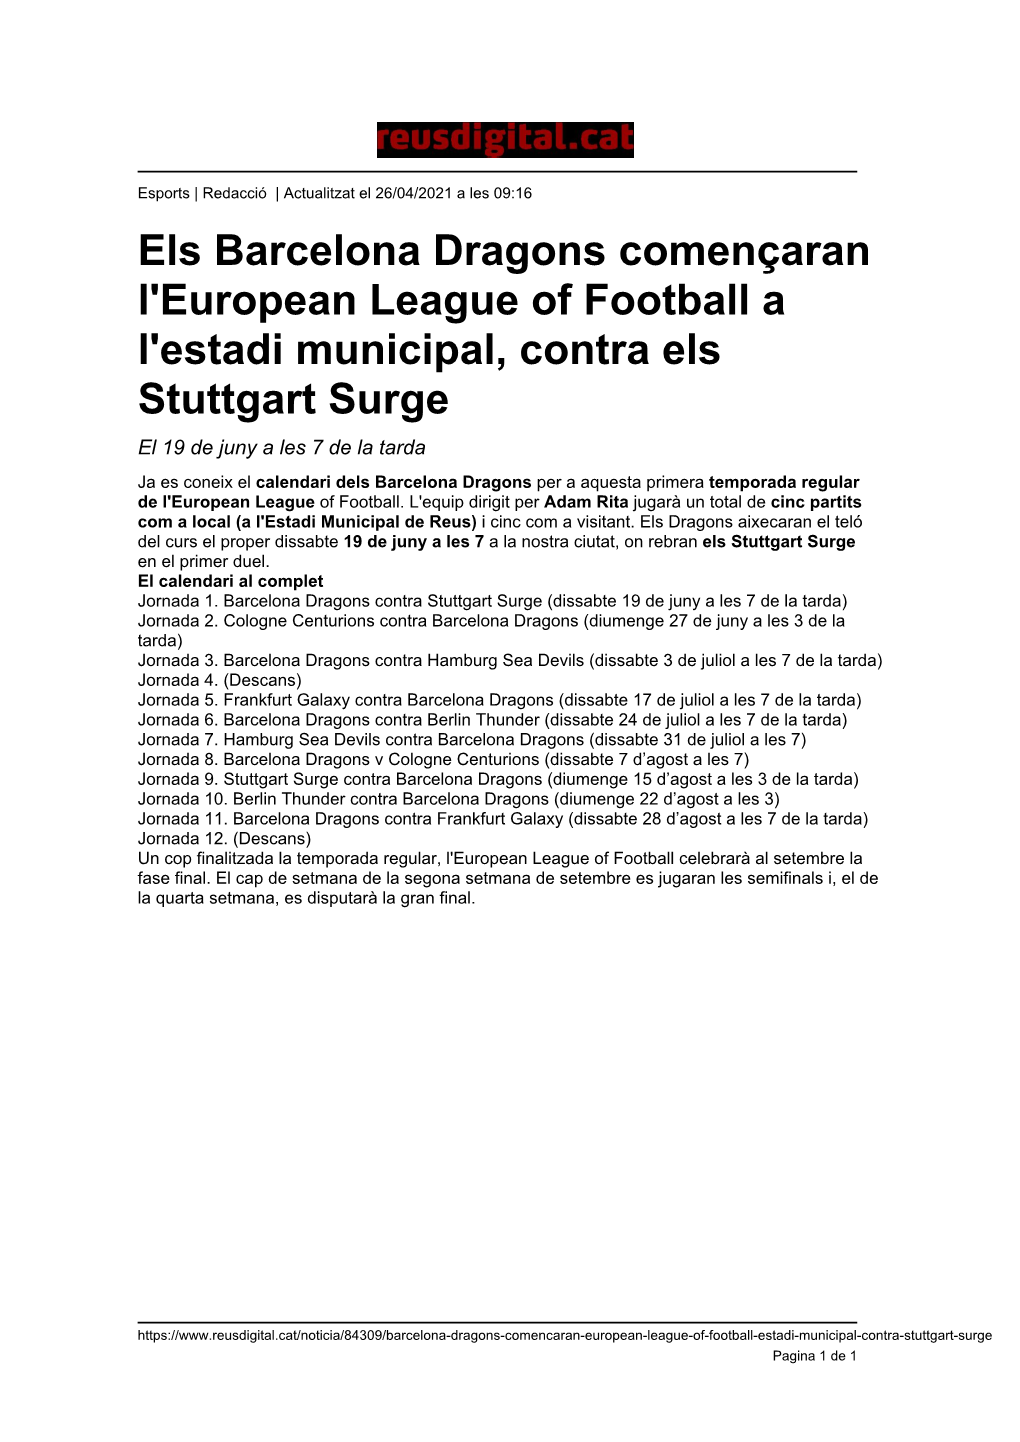 Els Barcelona Dragons Començaran L'european League of Football a L'estadi Municipal, Contra Els Stuttgart Surge